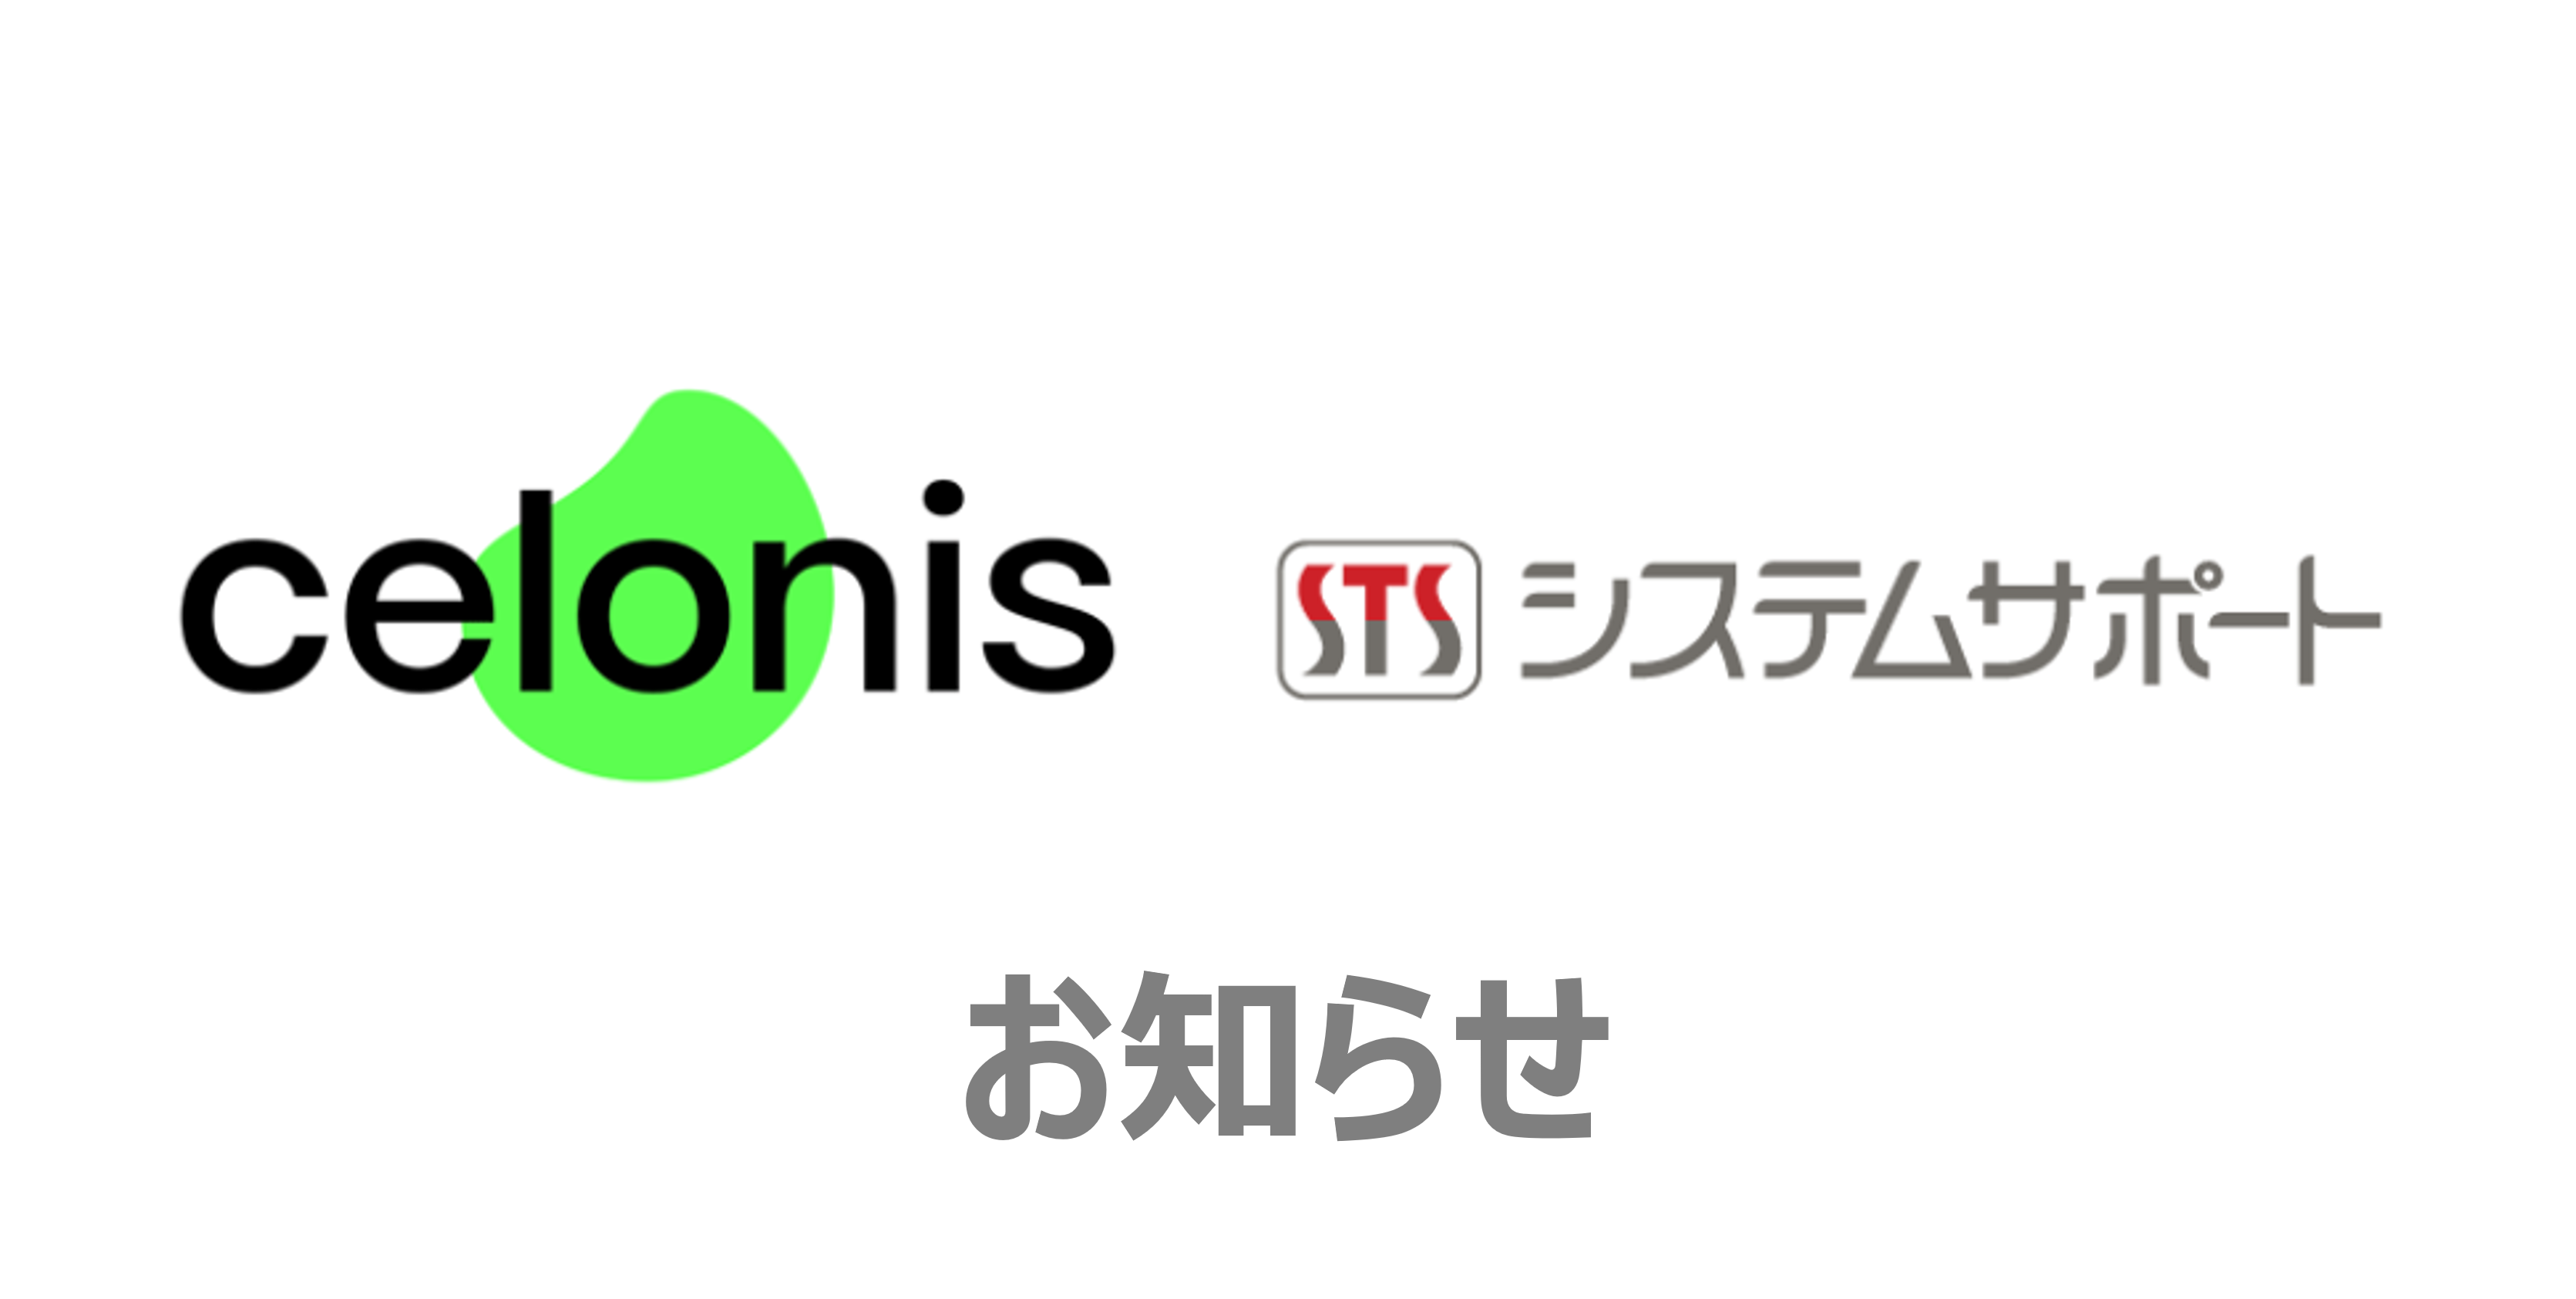 お知らせ エイト日本技術開発がdxプラットフォームとしてcelonisを採用 So Da